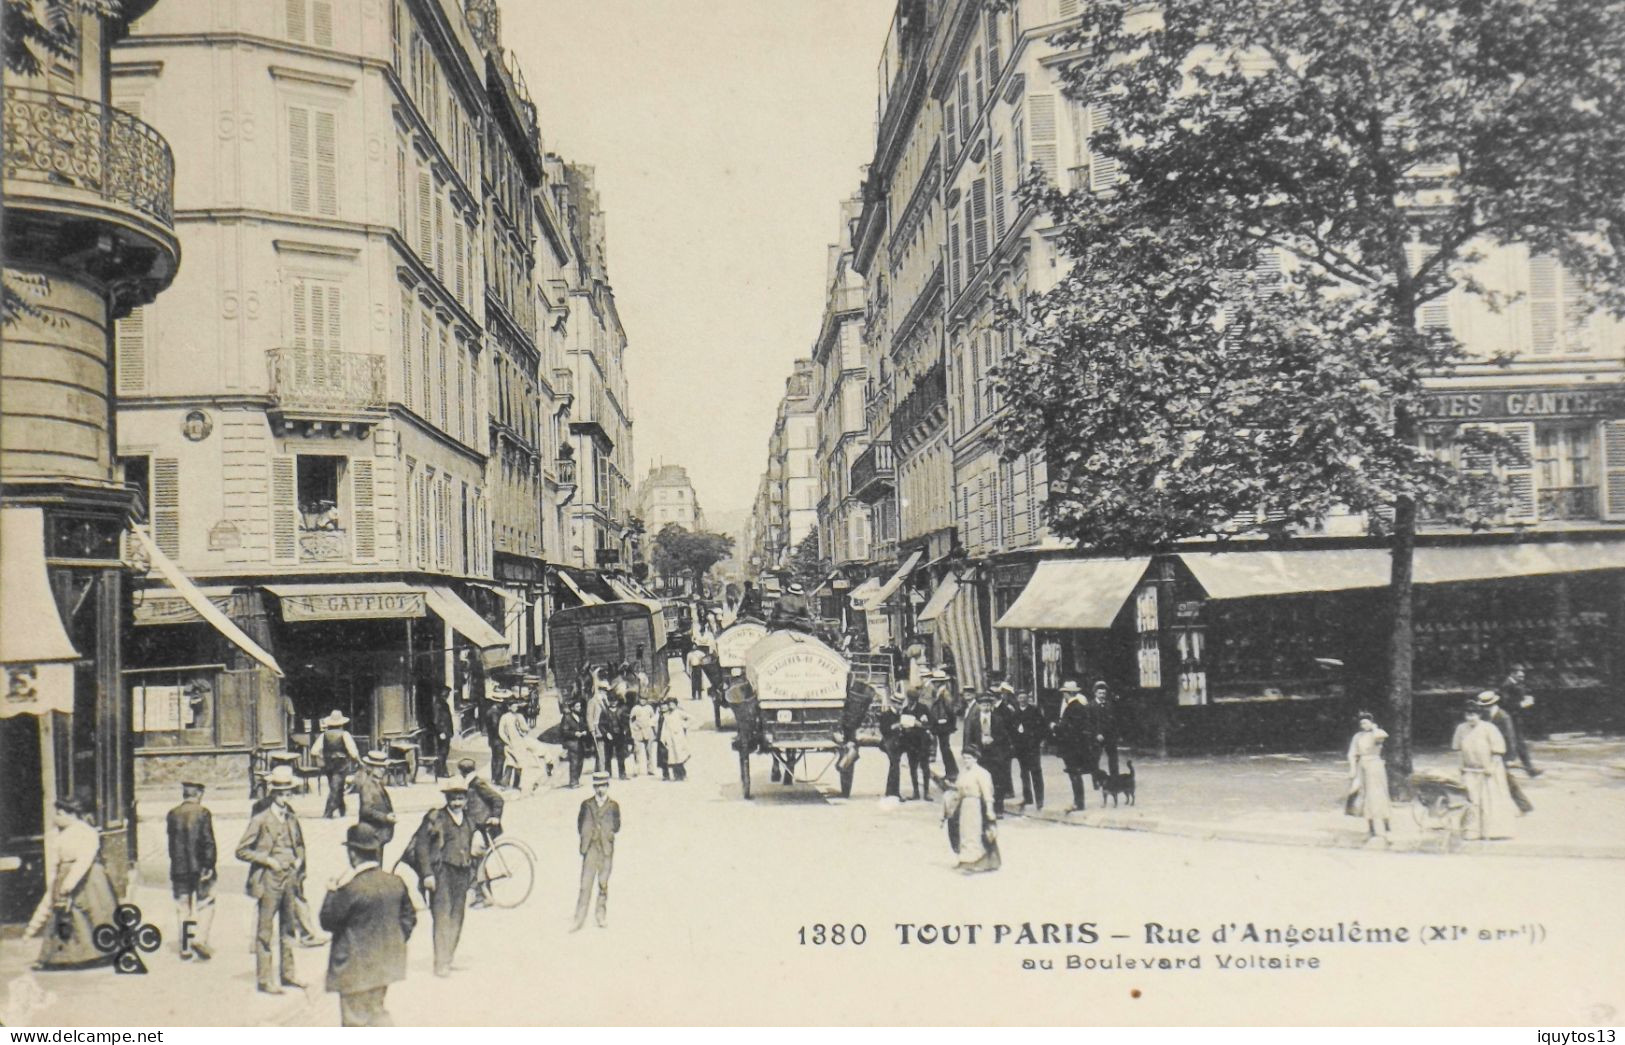 CPA. [75] > TOUT PARIS > N° 1380 - RUE D'ANGOULEME AU Bd. VOLTAIRE - (XIe Arrt.) - Coll. F. Fleury - TBE - Arrondissement: 11